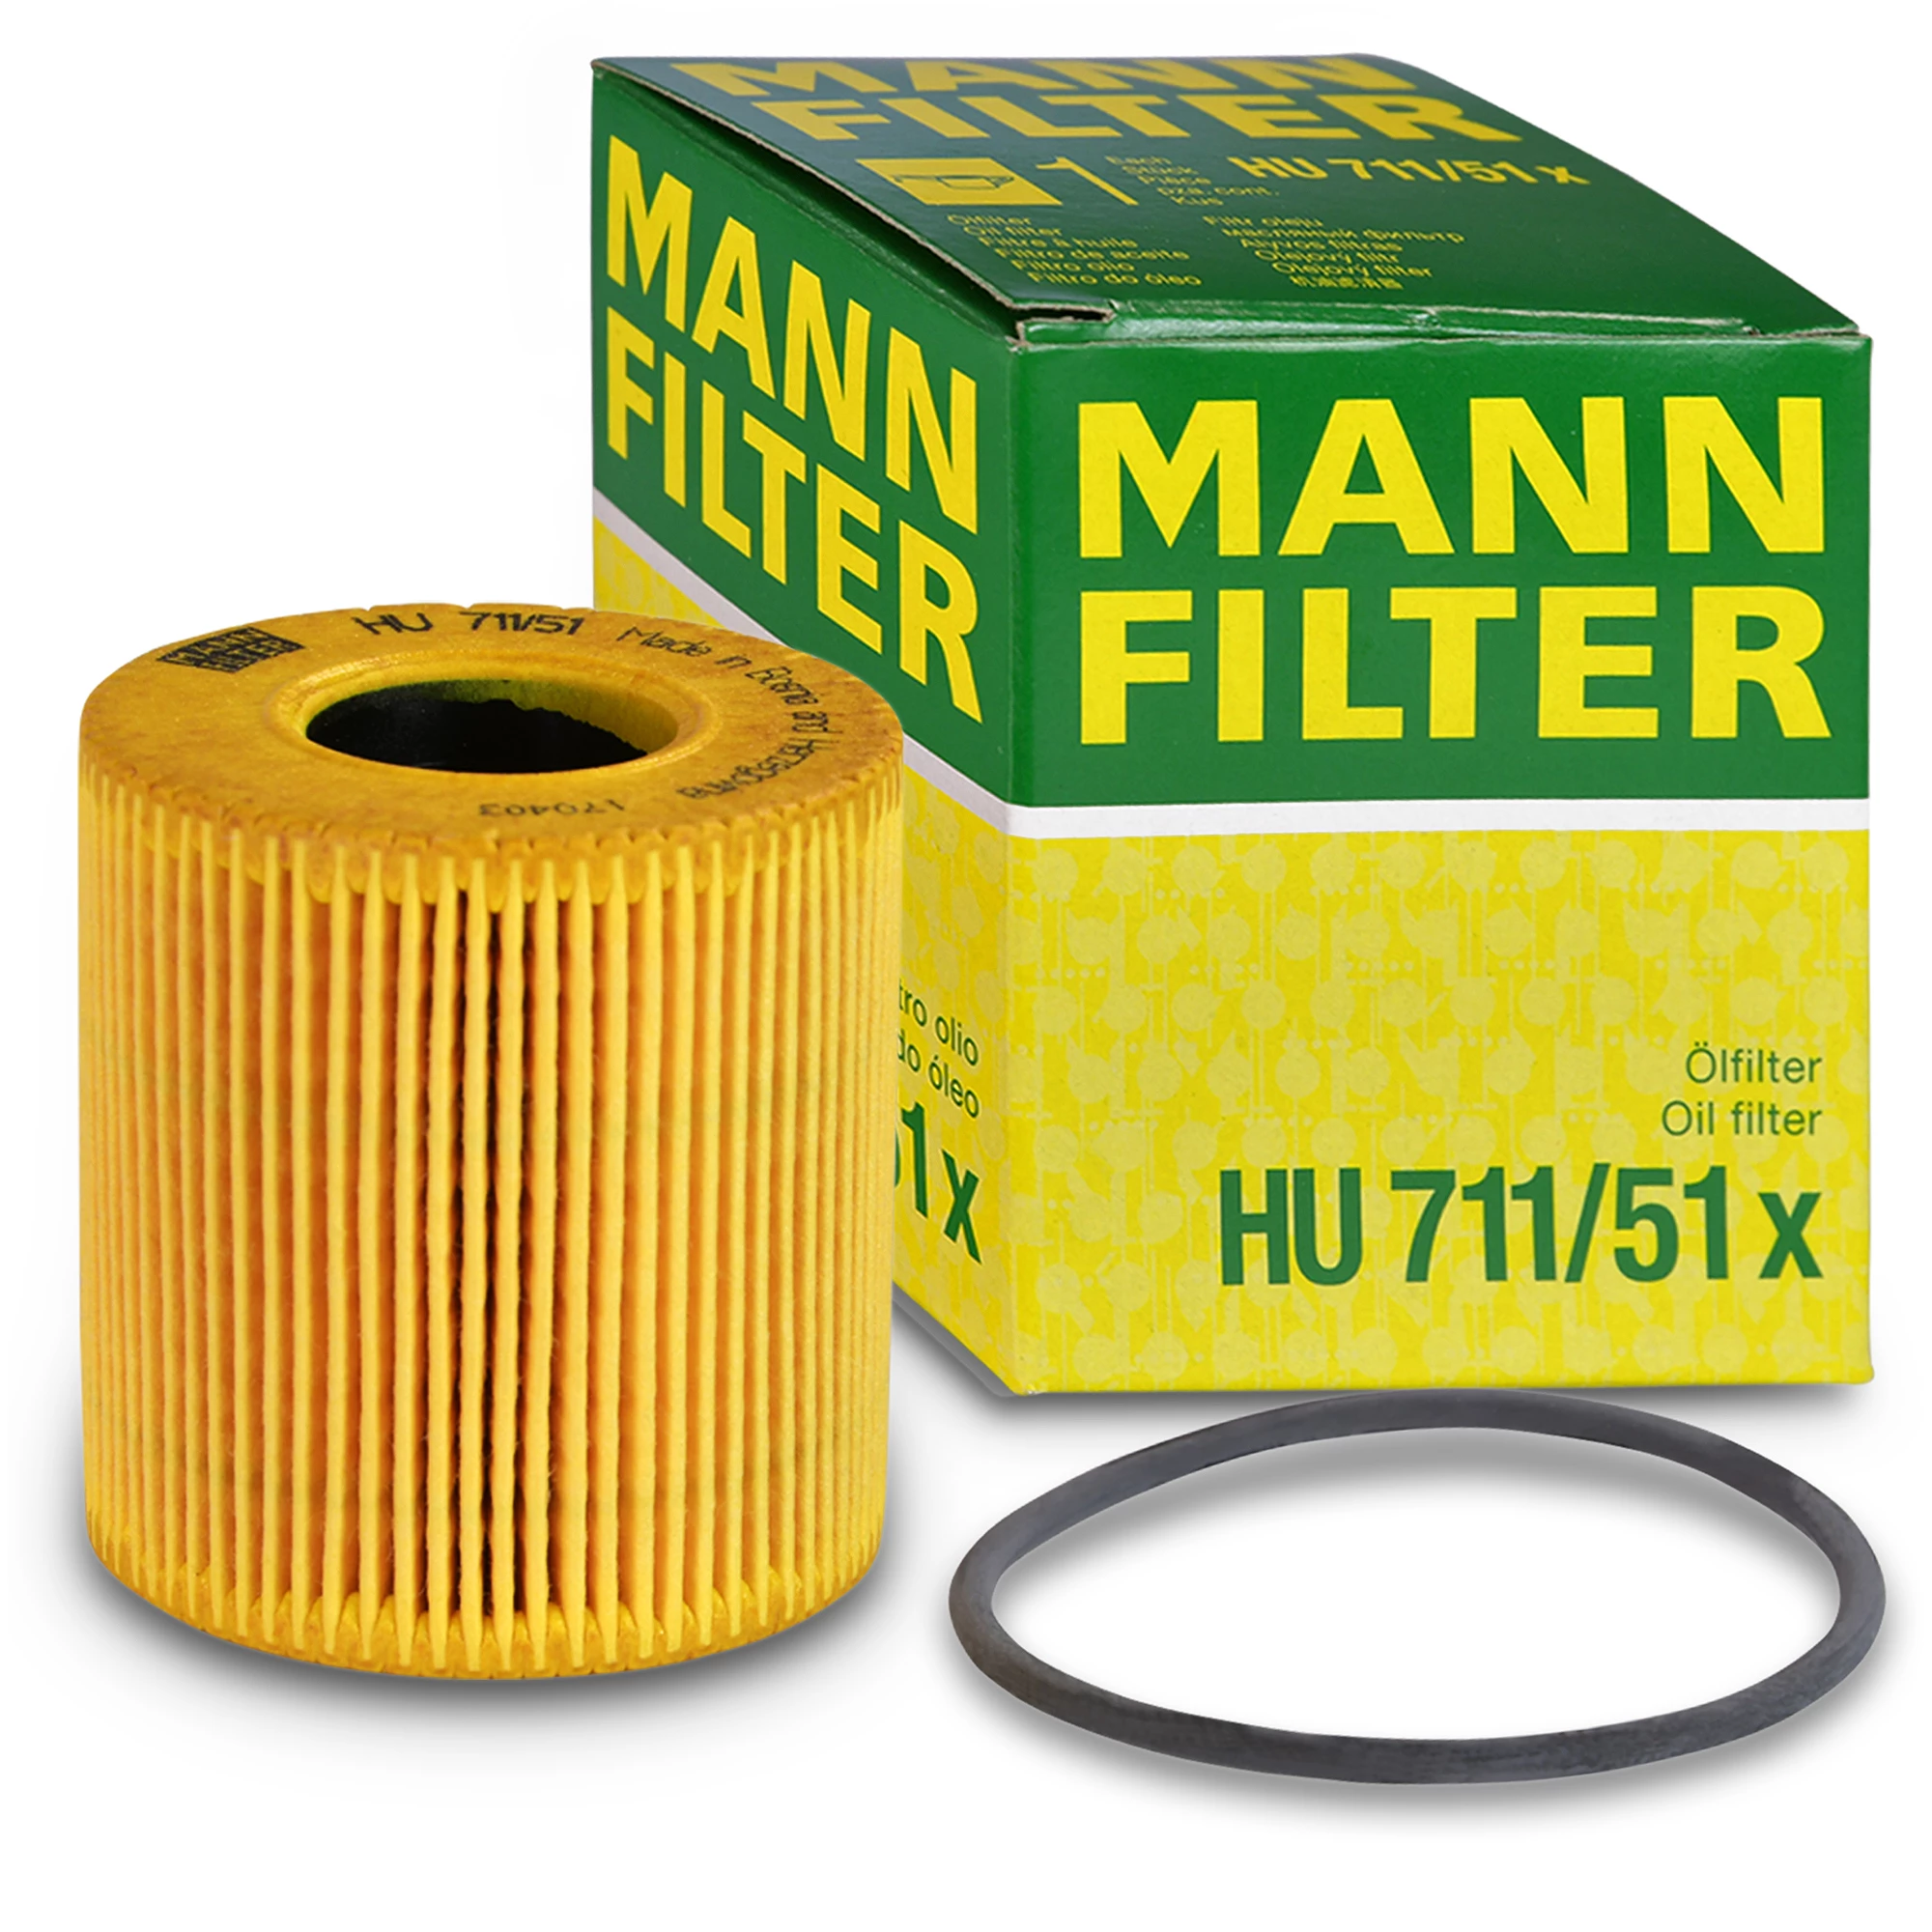 Mann Filter Ölfilter bis -50% günstiger kaufen